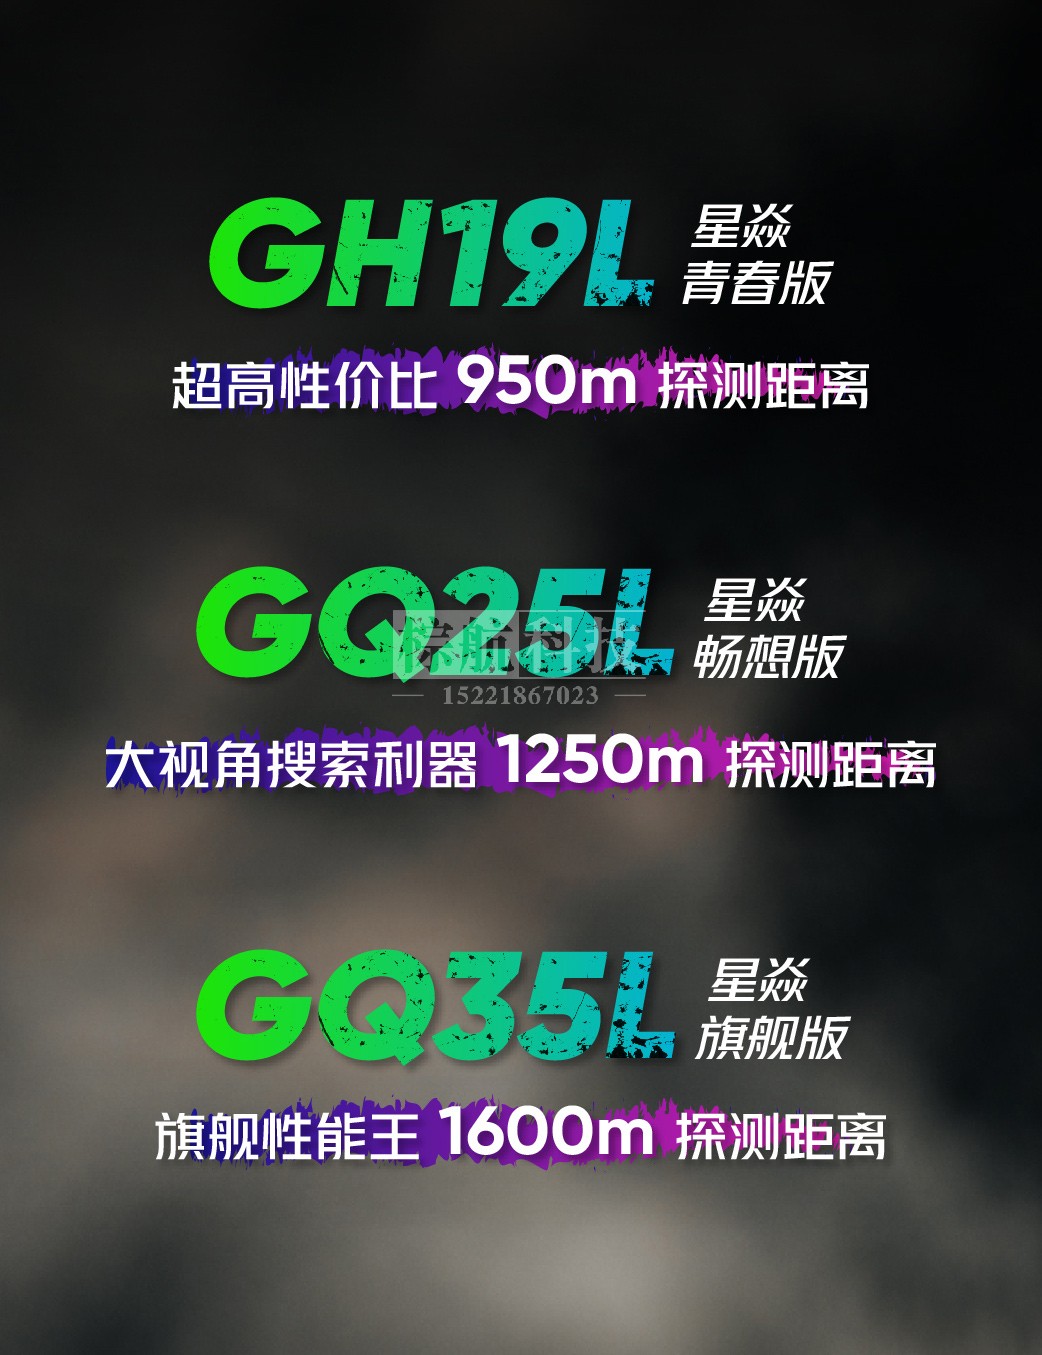 海康GQ25L,GQ35L,GH19L热像仪.jpg